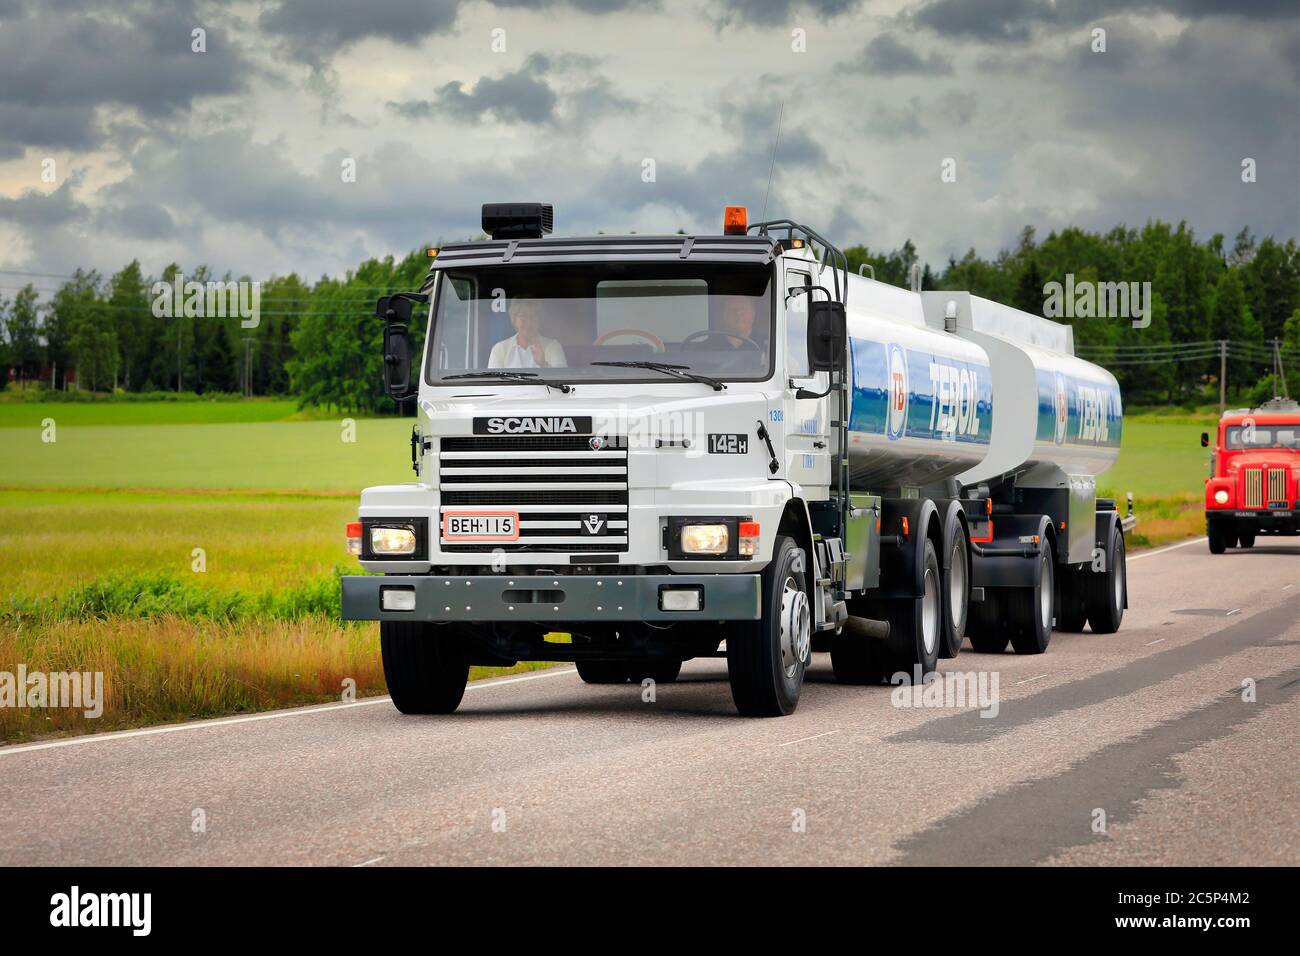 Scania 142H camion-citerne Teboil sur un rallye de camion d'époque organisé par l'Association des camions d'époque de Finlande. Suomusjärvi, Finlande. 4 juillet 2020. Banque D'Images